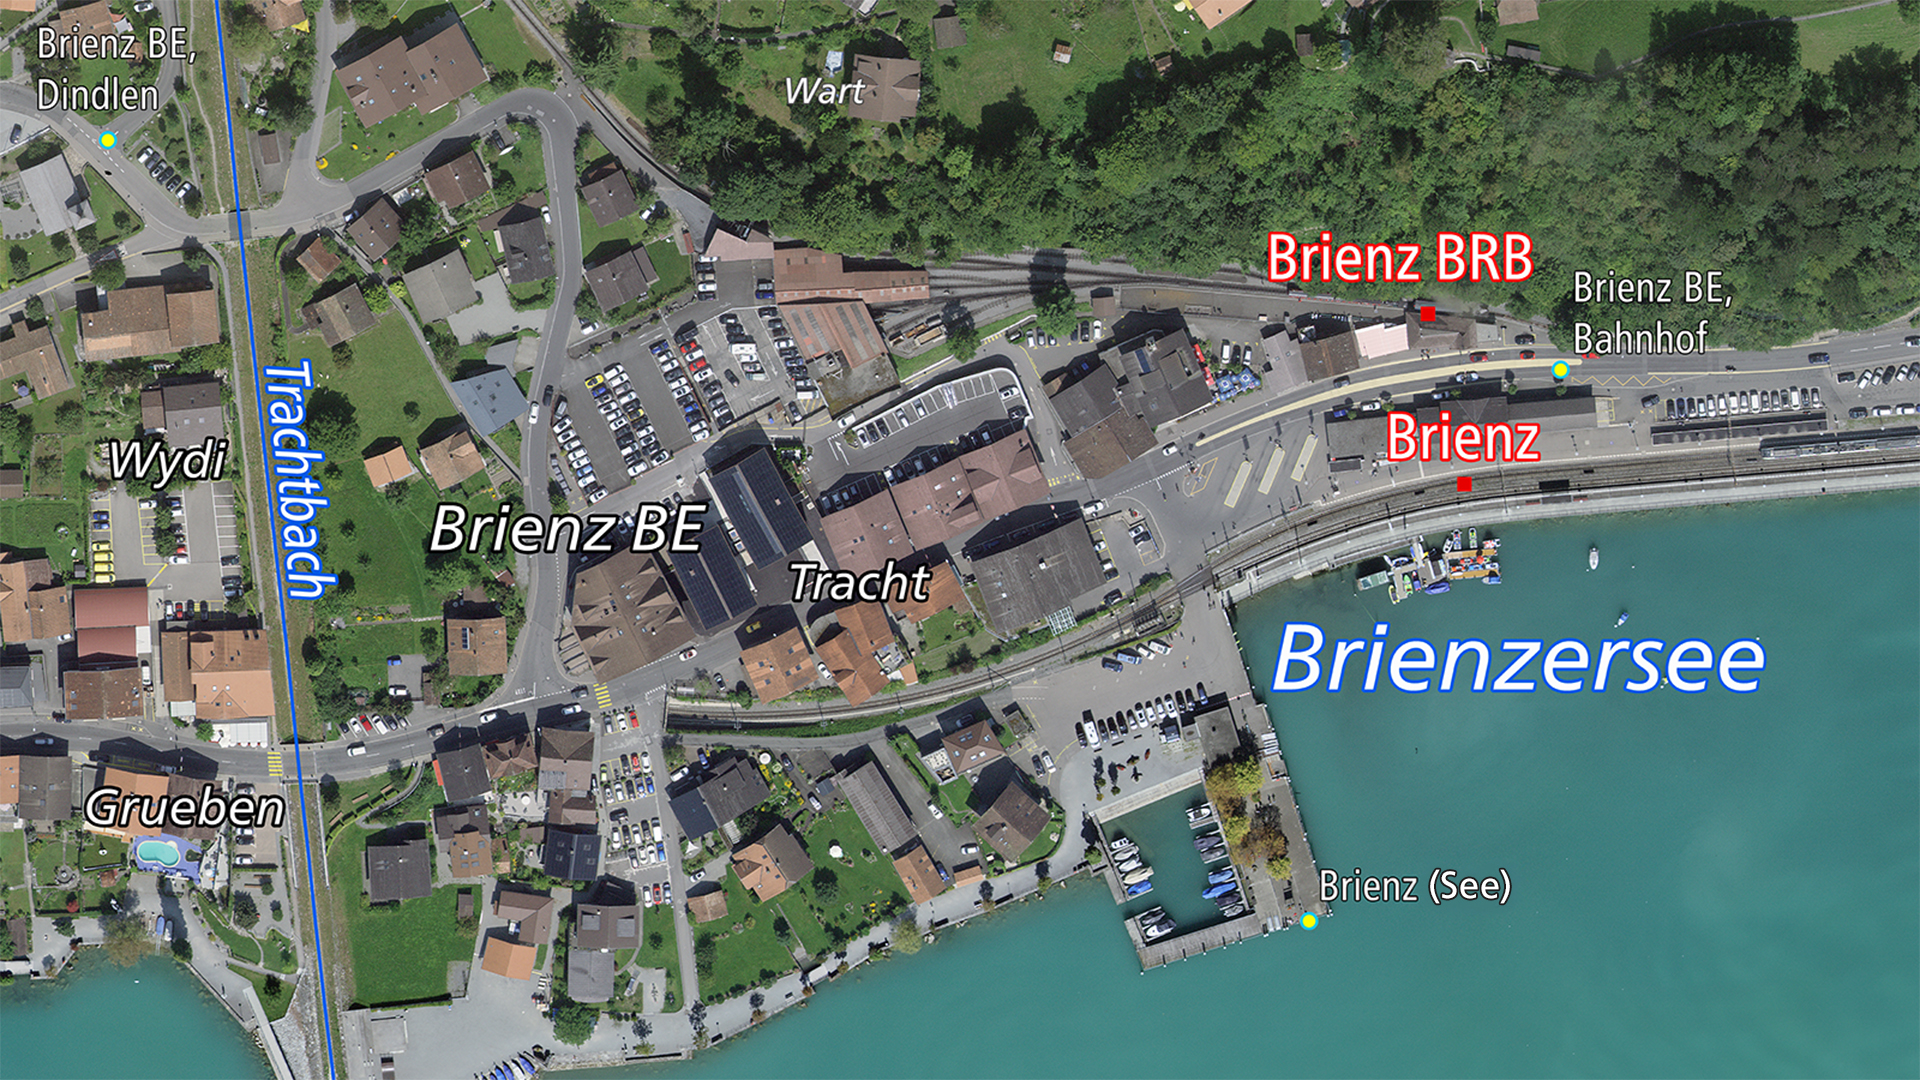 Luftbild von Brienz mit überlagerten geografischen Namen